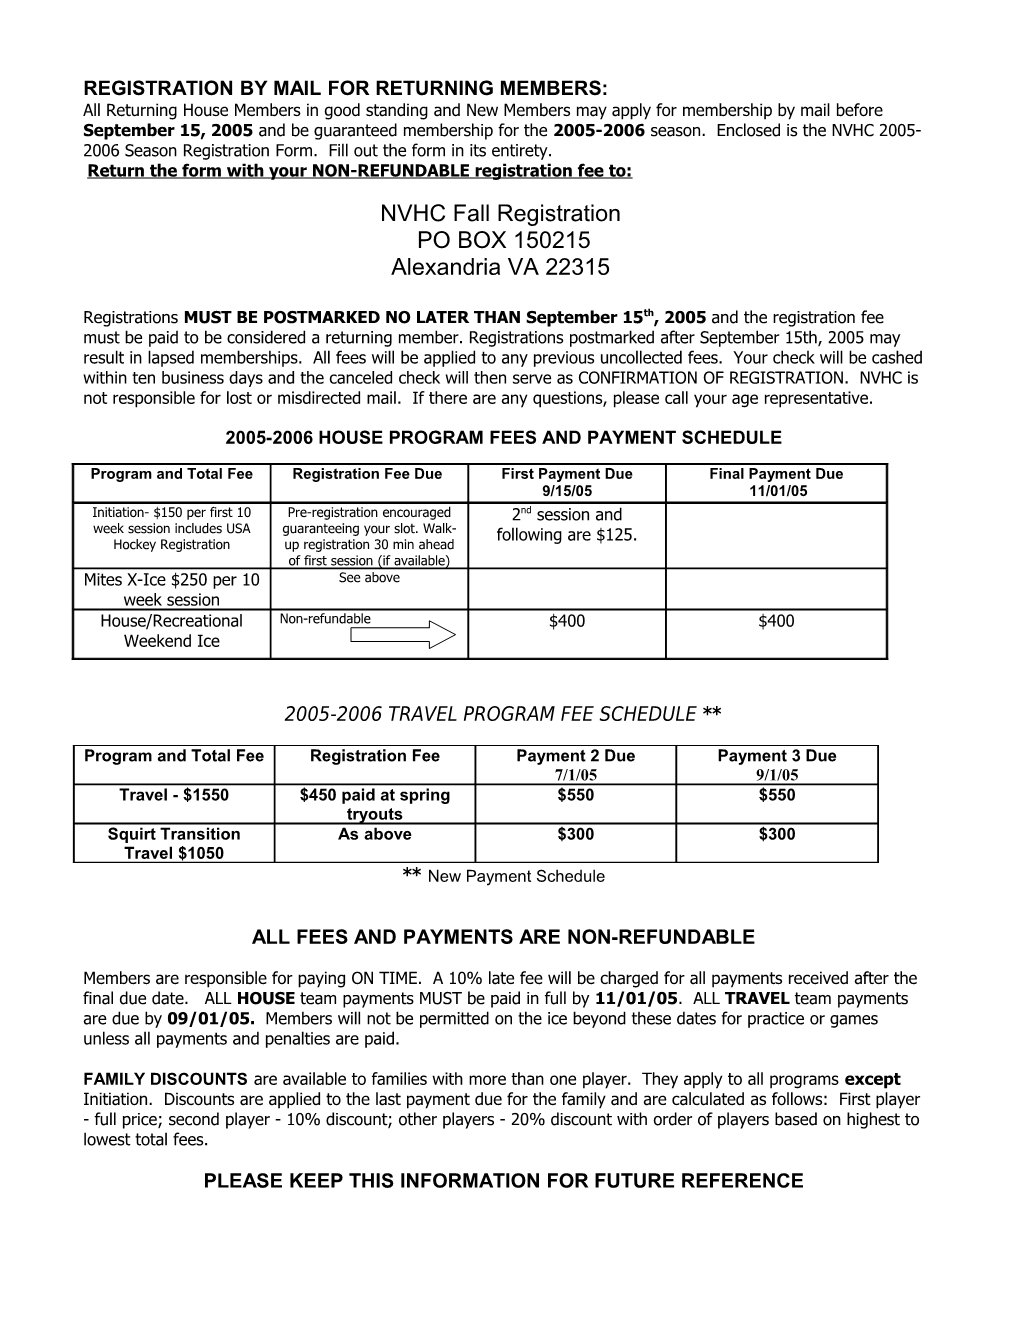 Nvhc 1998-99 Season Program Information